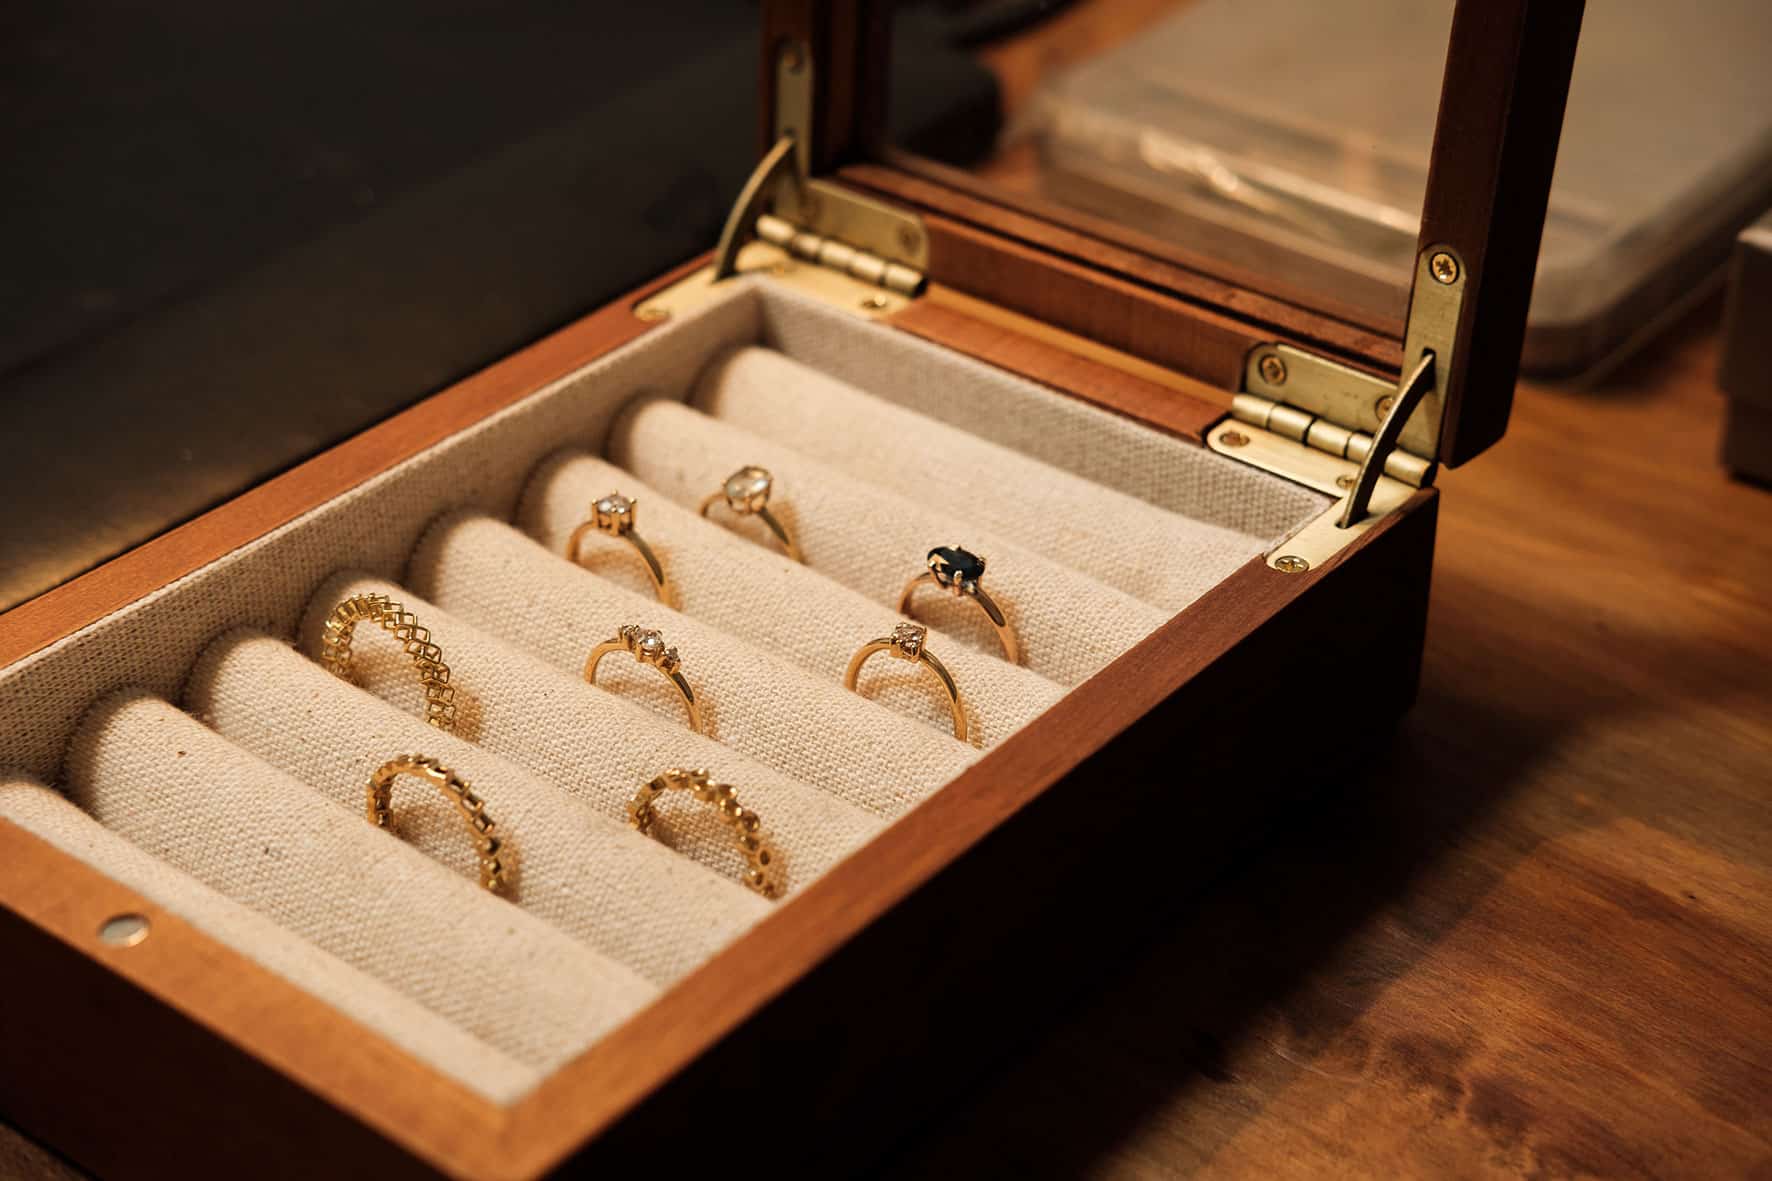 Caixa de joias exibindo diferentes anéis de ouro.